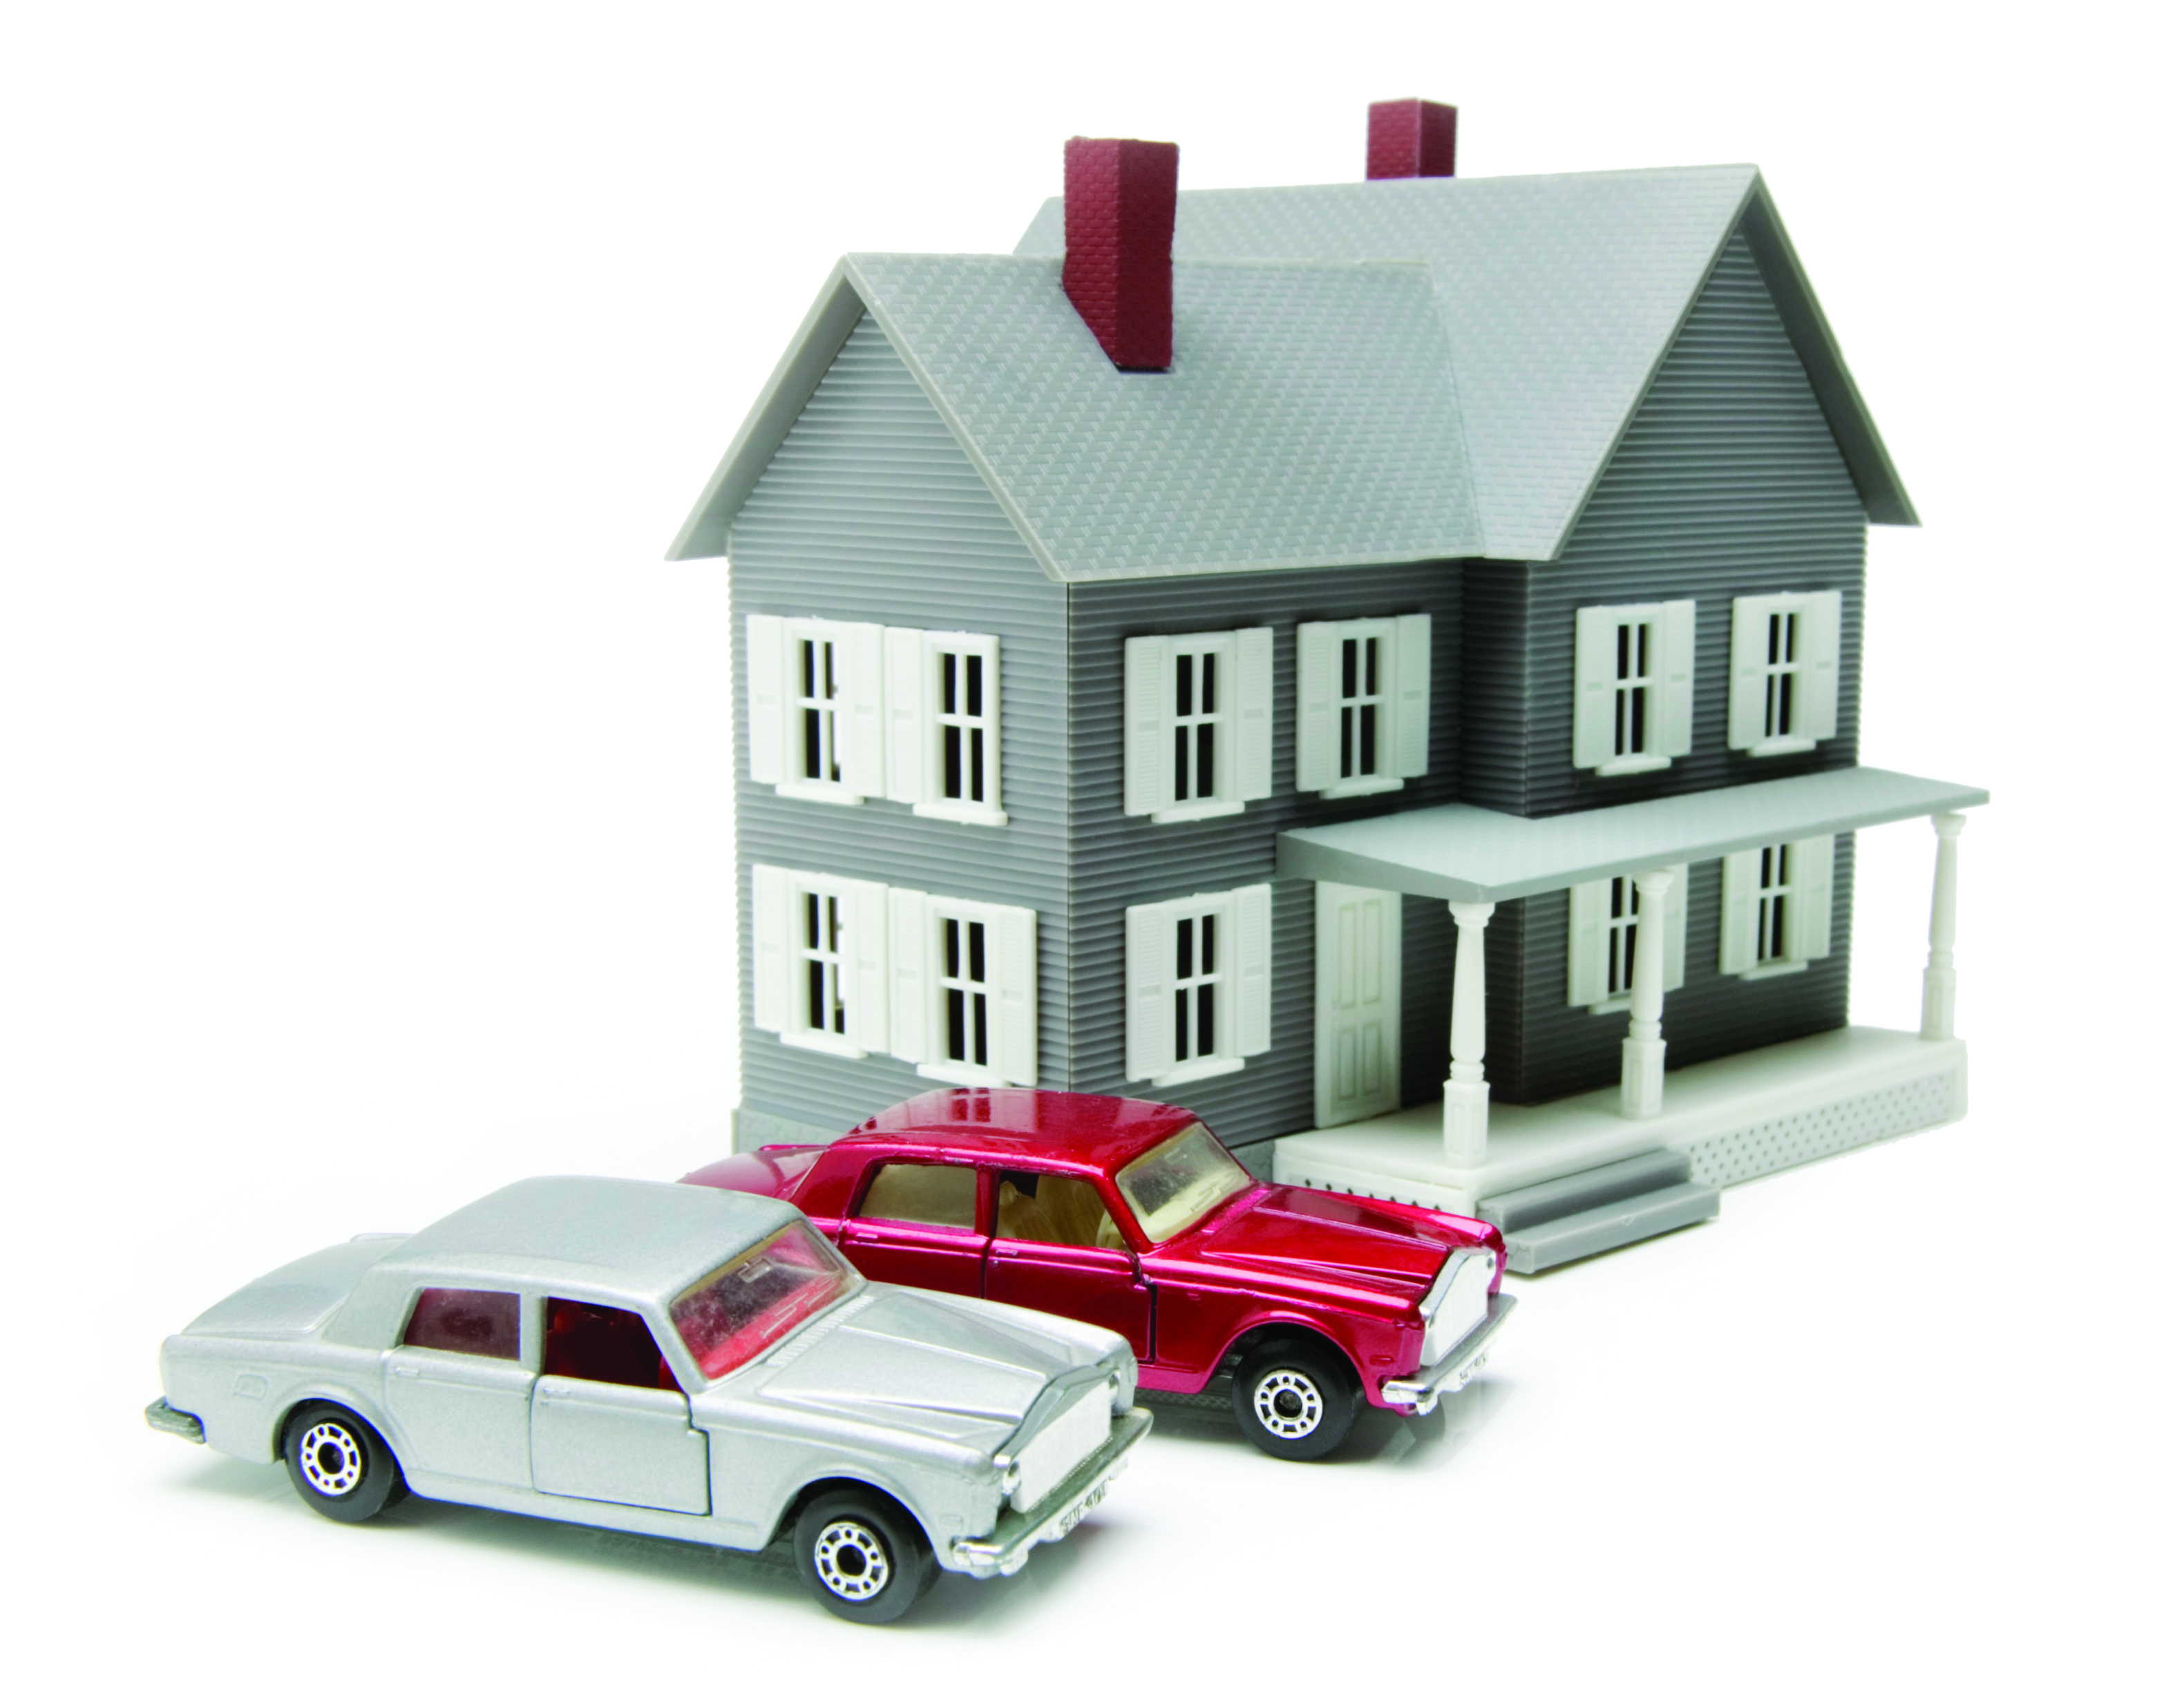 1с движимое имущество. Недвижимость и автомобиль. Автомобиль это недвижимое имущество. Оценка имущества движимого и недвижимого имущества. Имущество недвижимость транспортные средства.